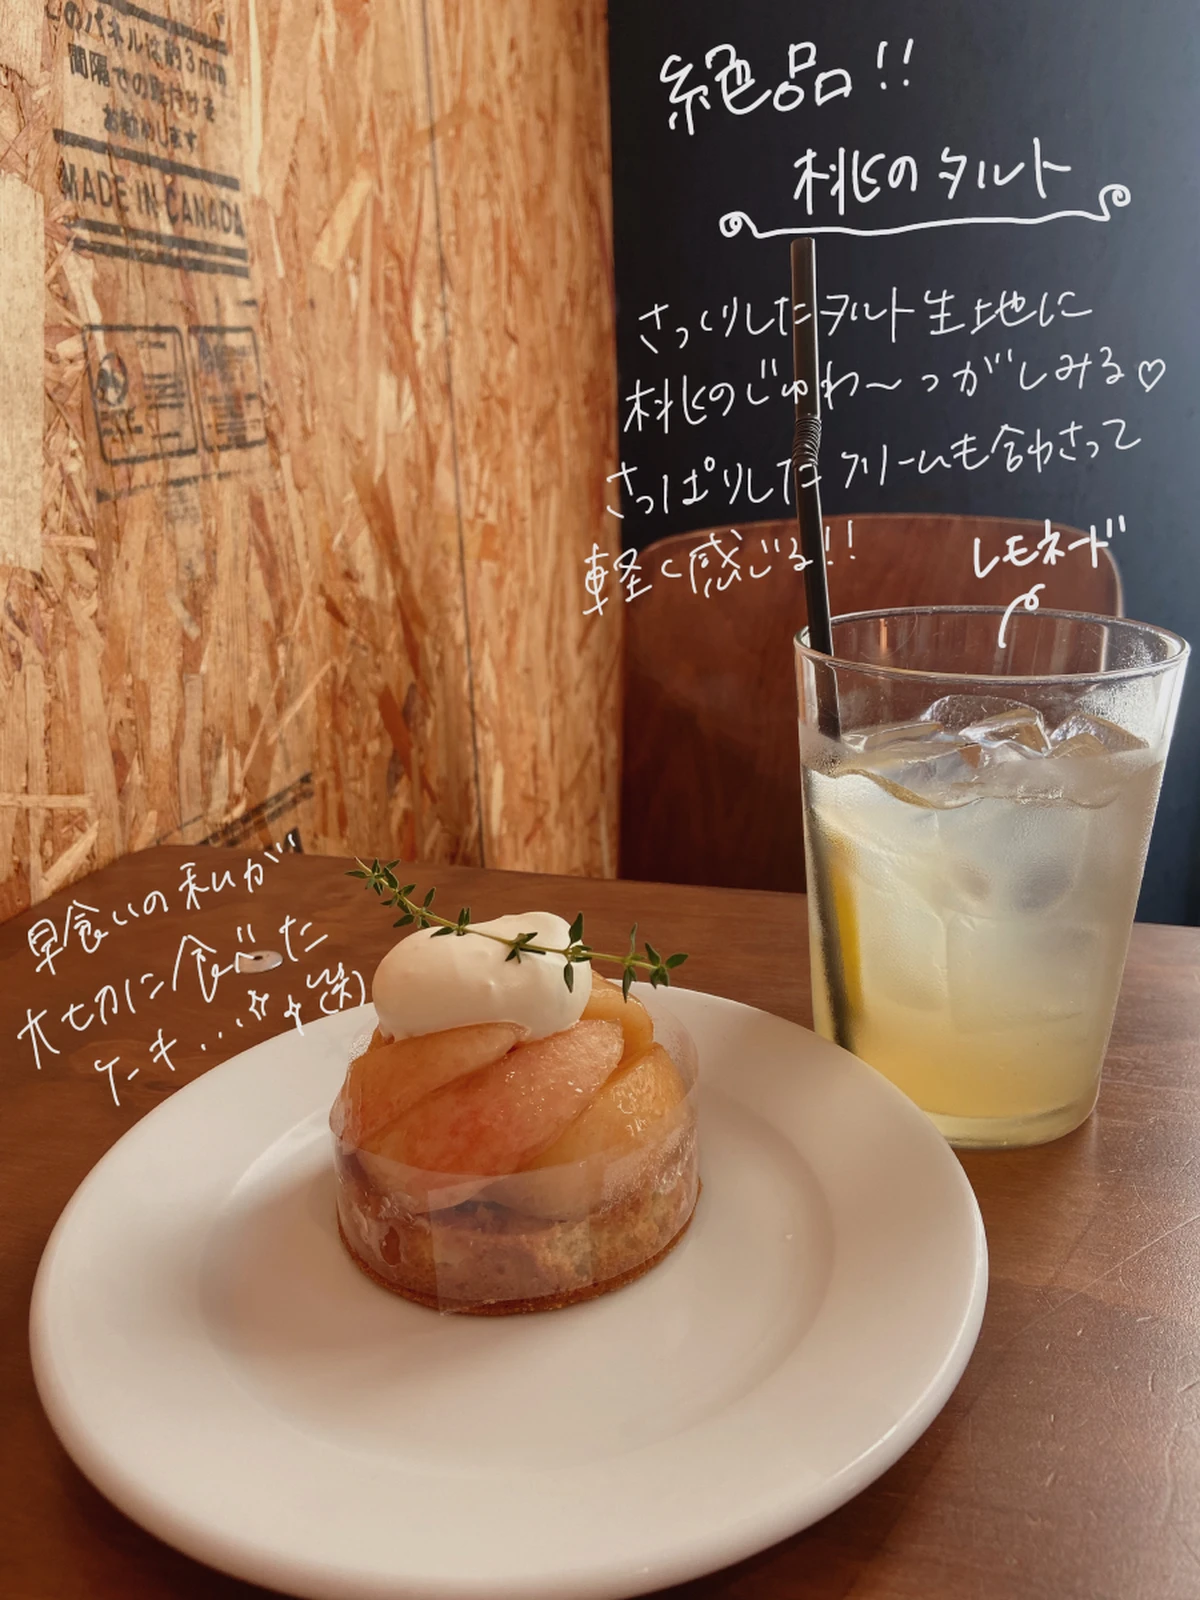 ドライブにぴったり 大阪 堺のおしゃれカフェ Mi Ya Saが投稿したフォトブック Lemon8